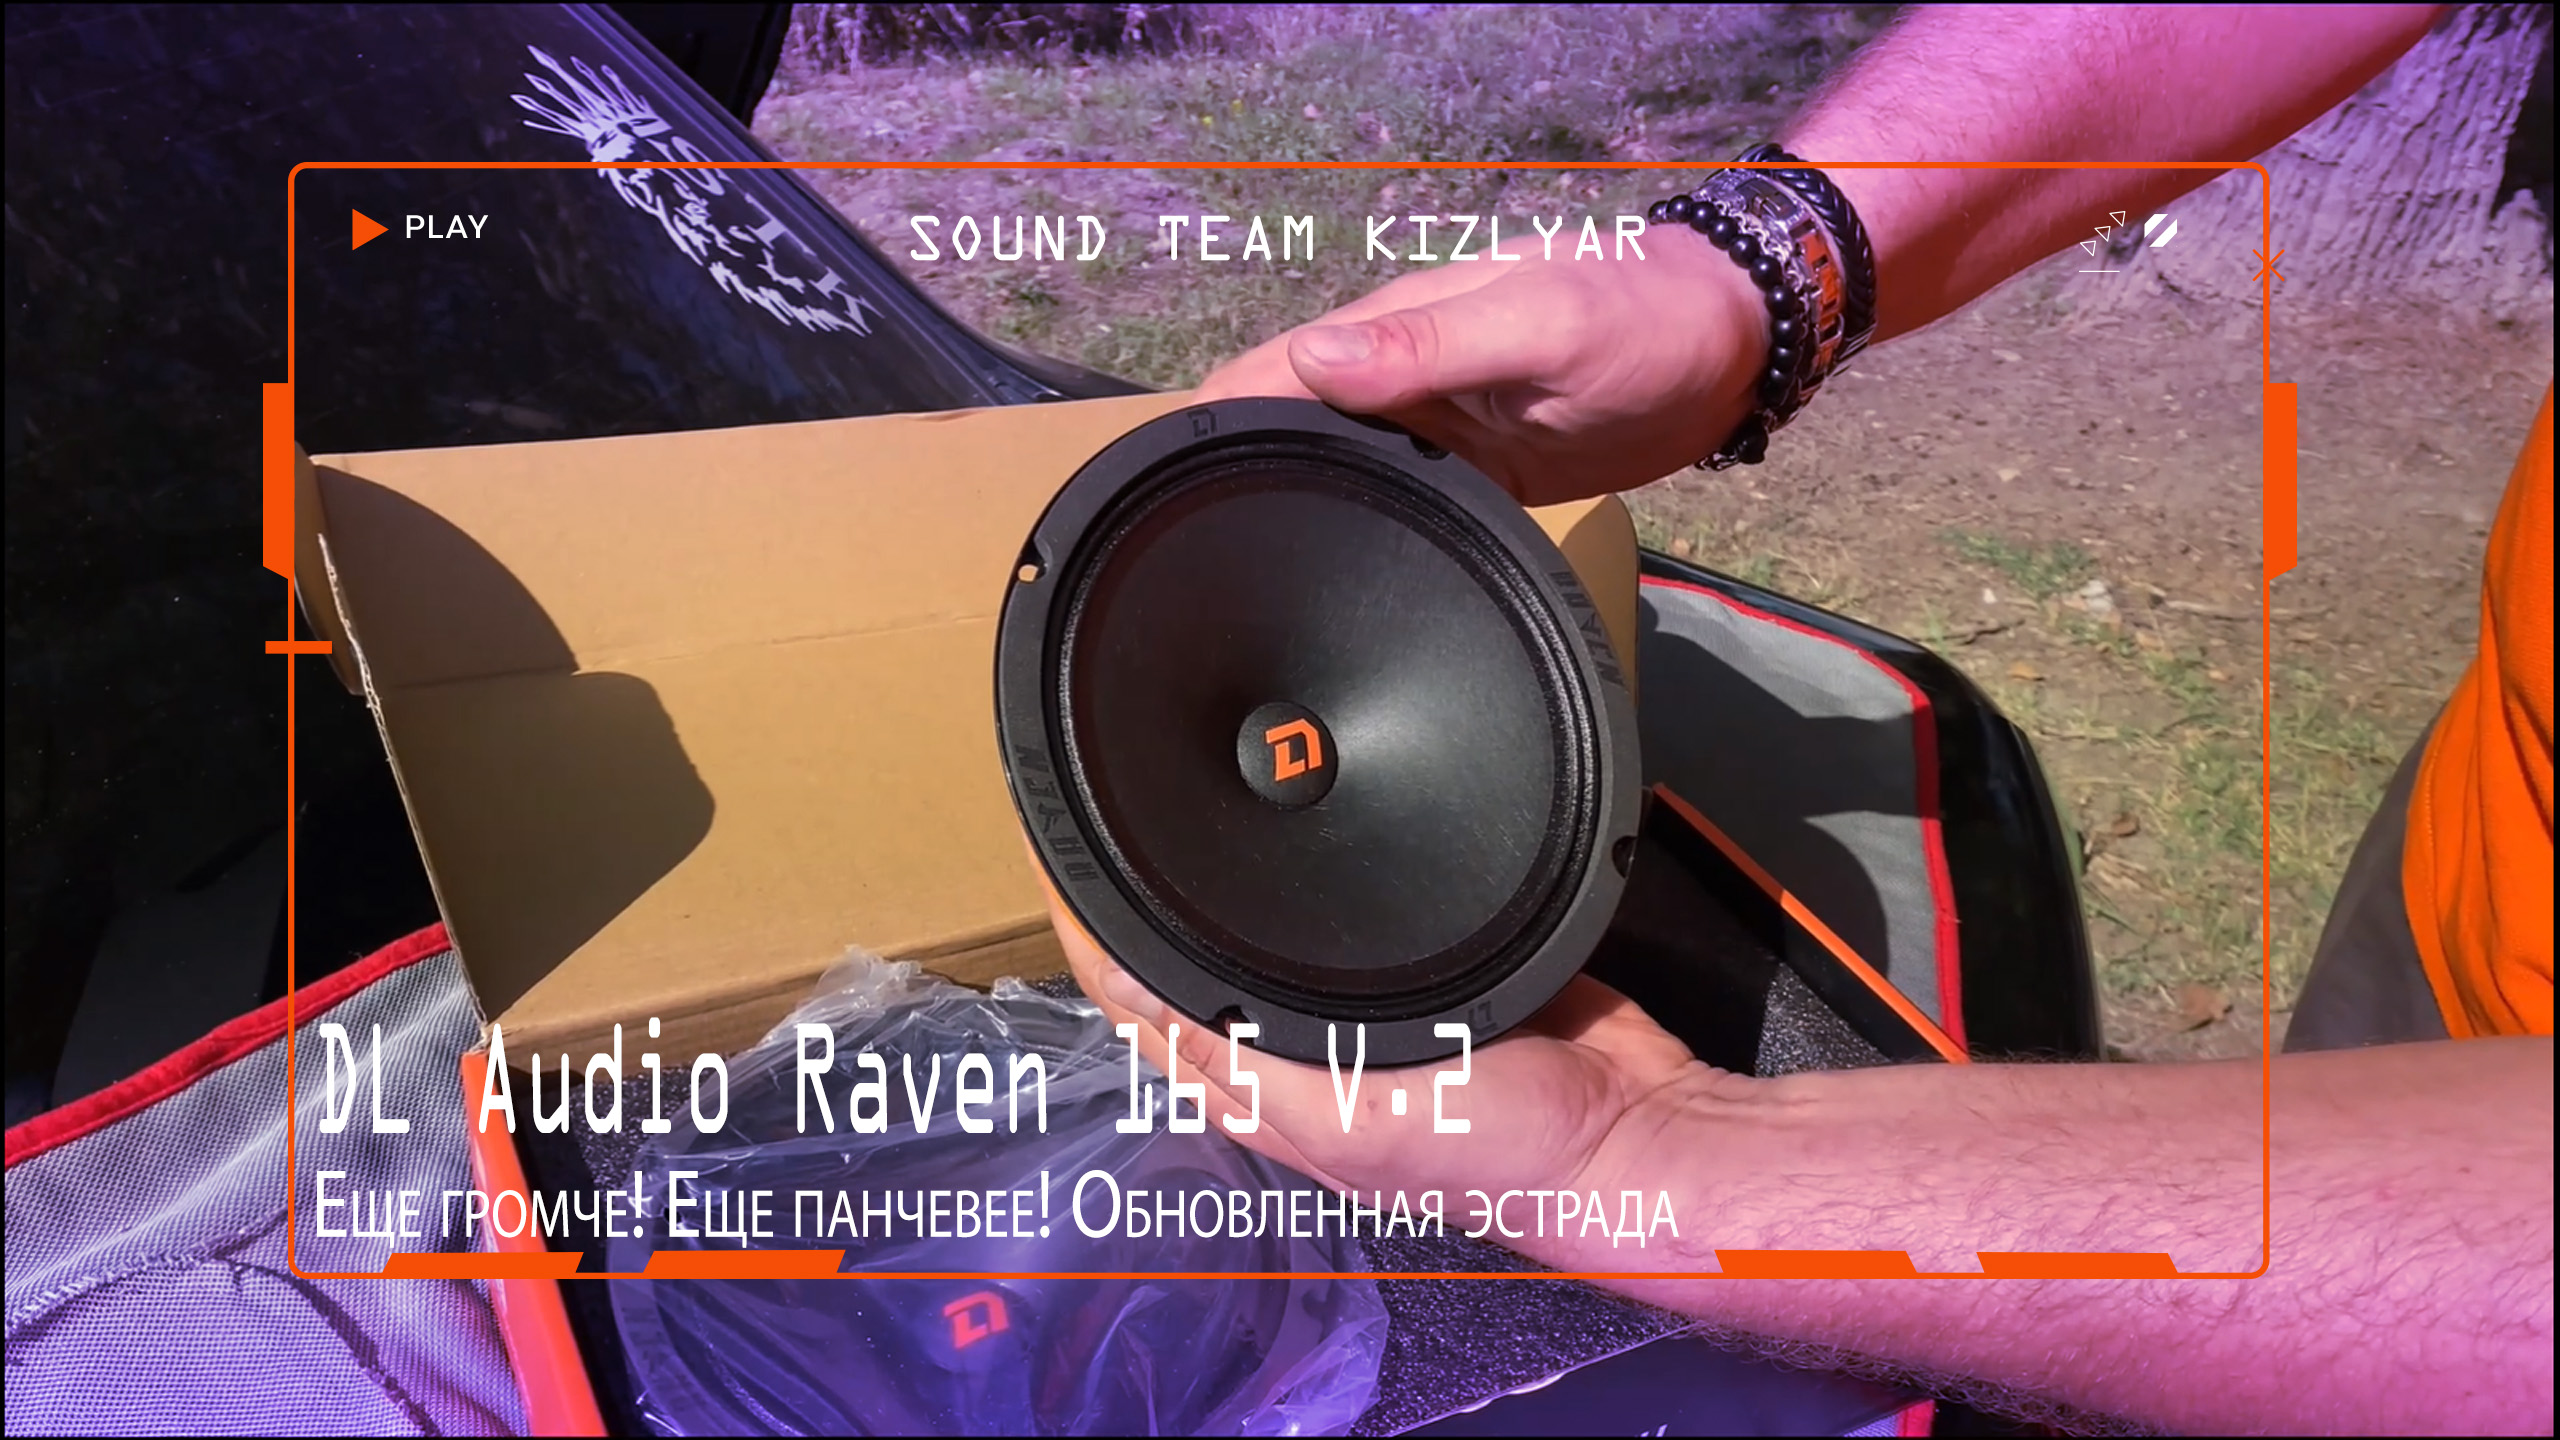 Еще громче! Еще панчевее! Обновленная эстрада DL Audio Raven 165 V.2